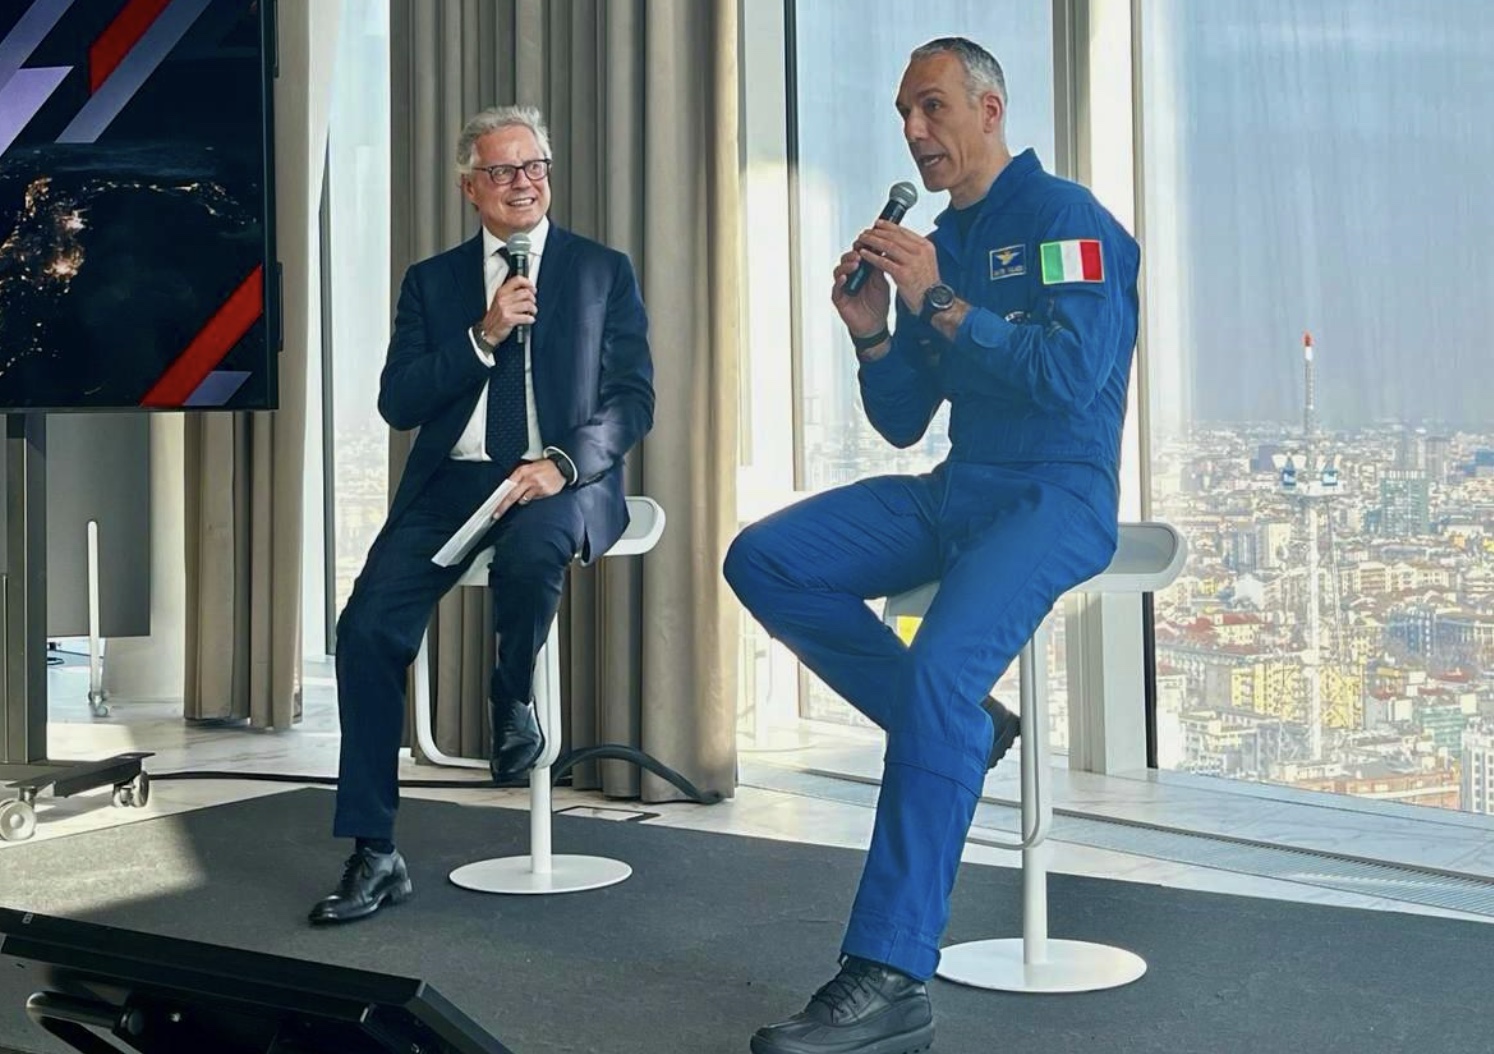 Aeronautica Militare ו-PwC Italia: טיסה אנושית בחלל כהזדמנות לחברות בכלכלת החלל החדשה